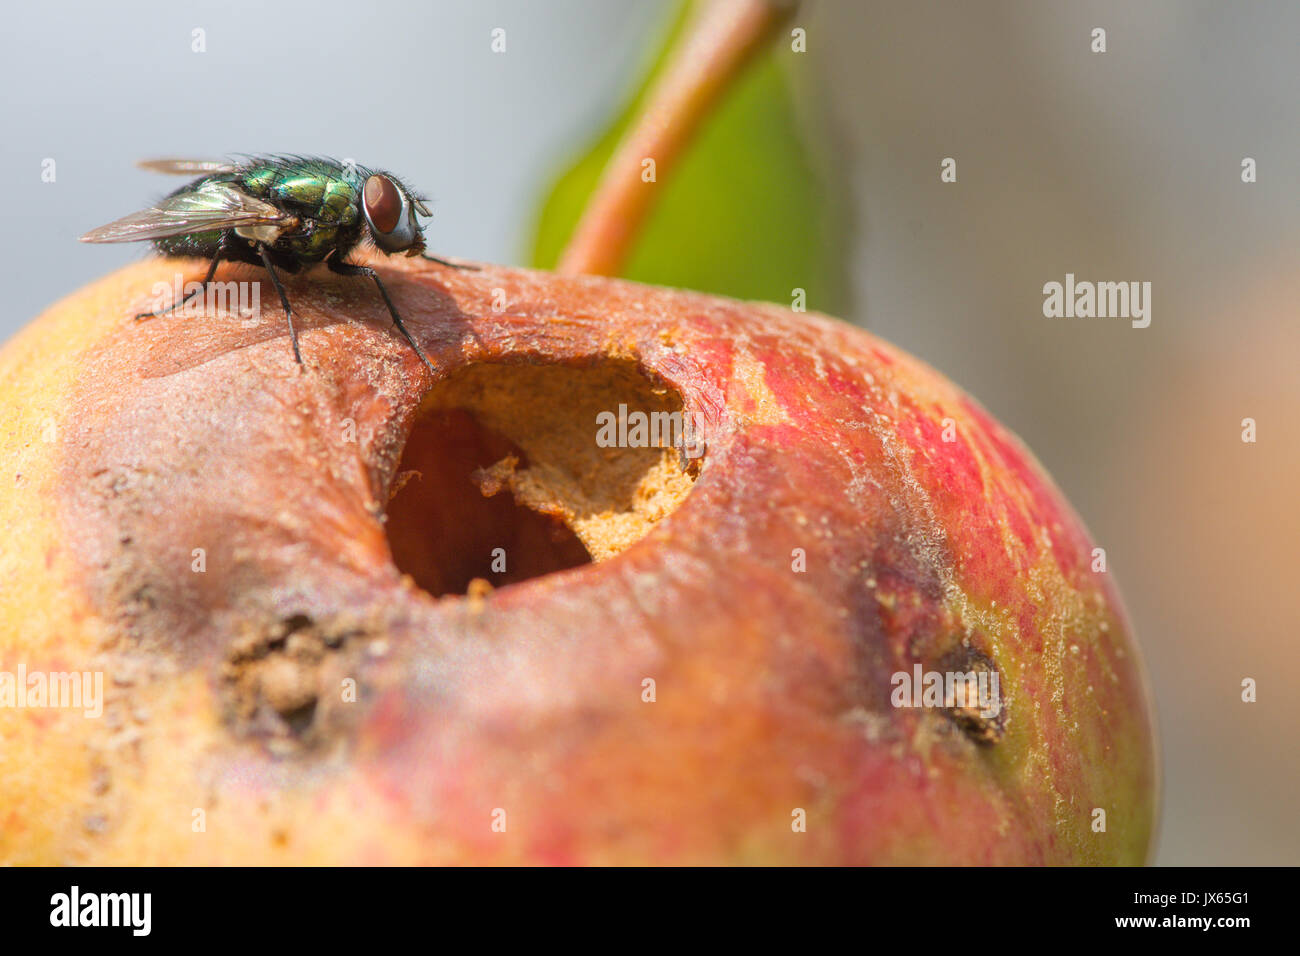 Fly à côté de trou dans le pourrissement de manger toujours sur apple tree. Sussex, UK. Août Banque D'Images